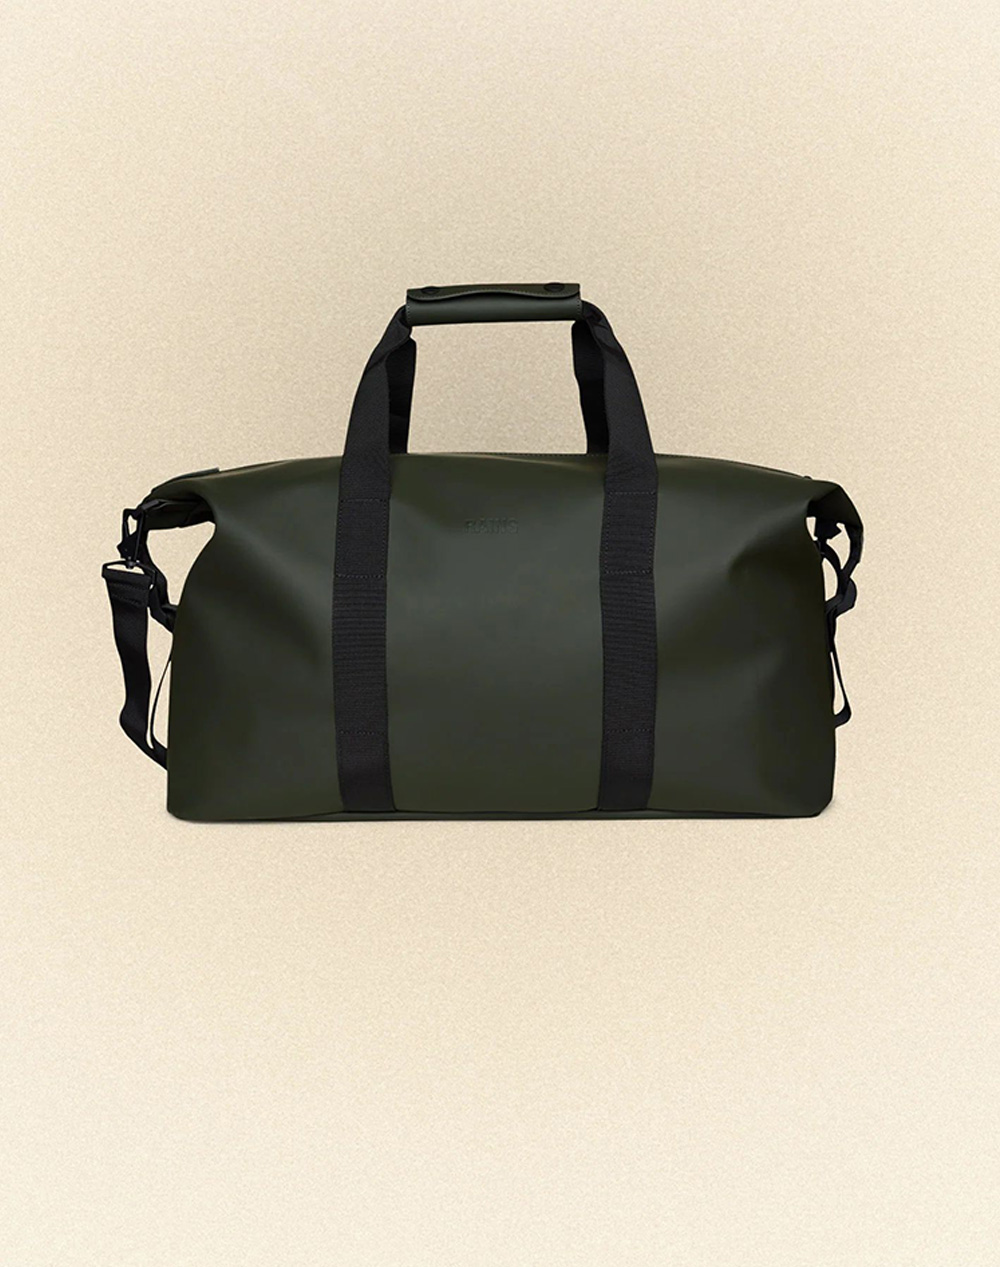 RAINS Hilo Weekend Bag W3 (Dimensiuni: 27 x 52 x 26 cm.)